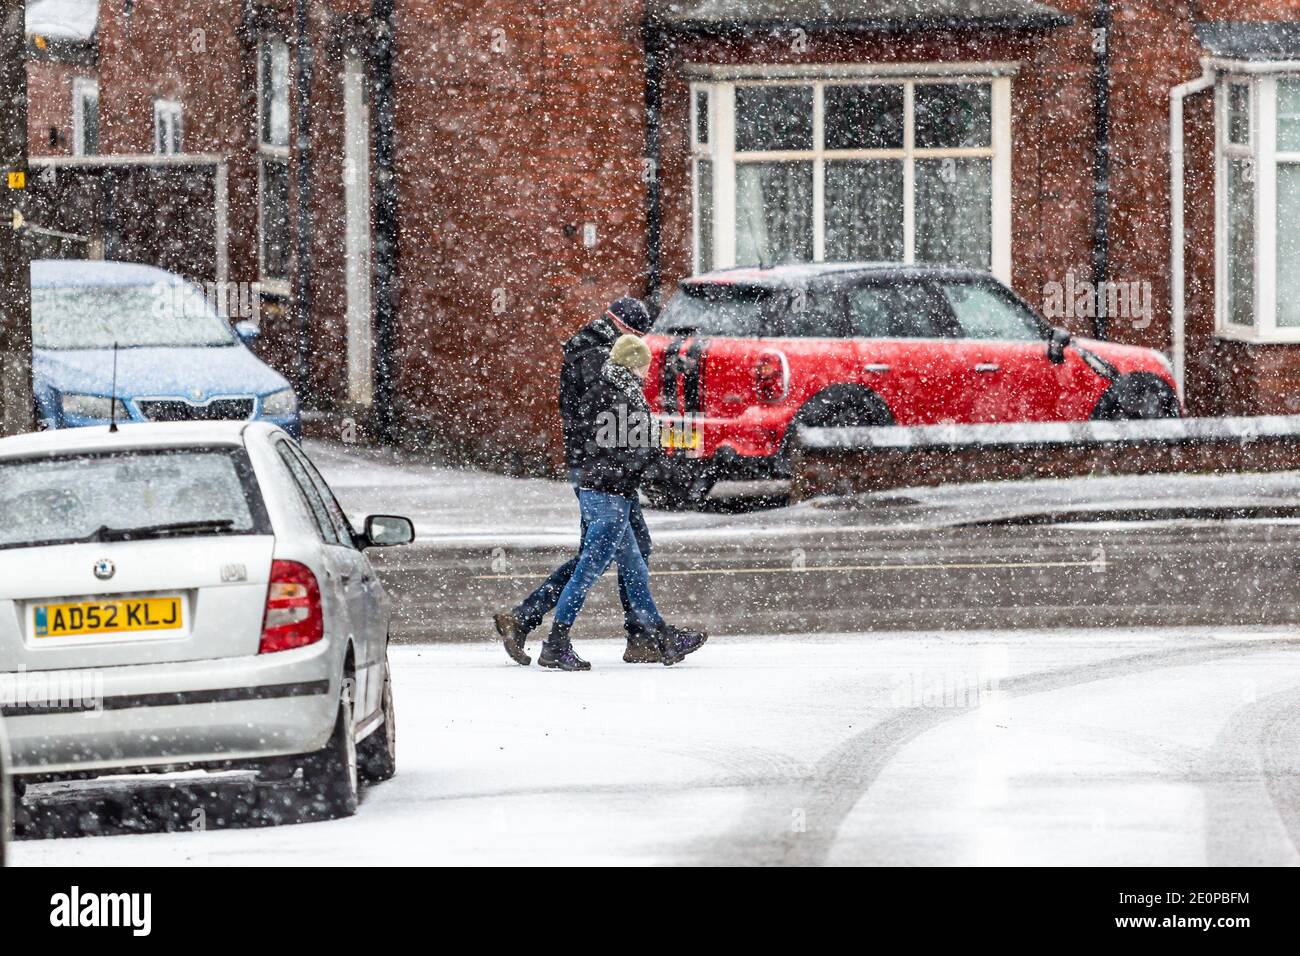 Cradley Heath, West Midlands, Royaume-Uni. 2 janvier 2020. La neige tombe en quantité significative sur Cradley Heath, West Midlands, attrapant les gens qui marchent. Crédit : Peter Lophan/Alay Live News Banque D'Images